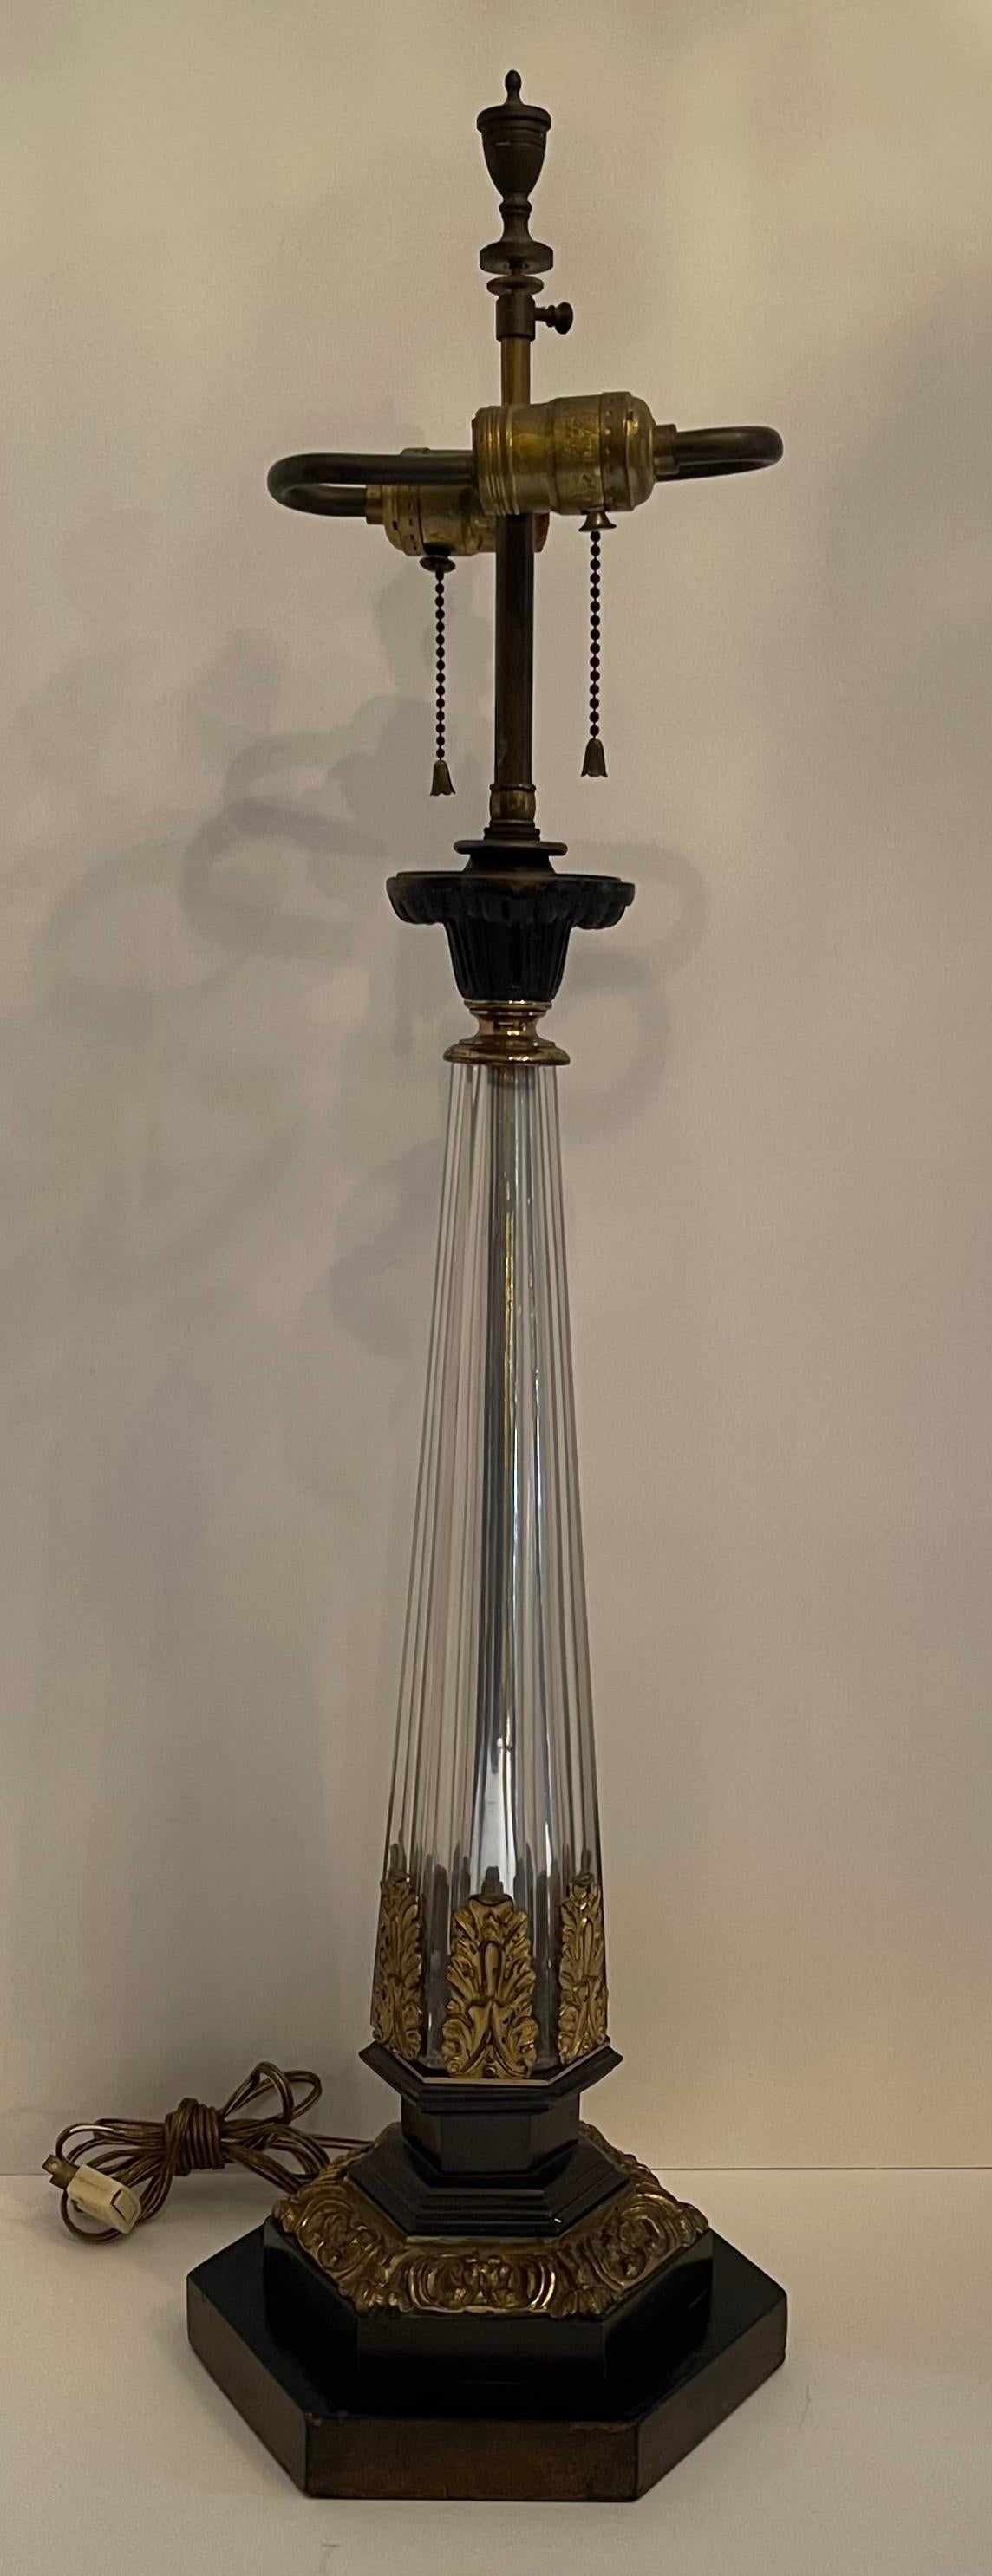 Une merveilleuse lampe centrale Empire français / néoclassique, peinte en bronze doré et doré avec colonne en cristal.